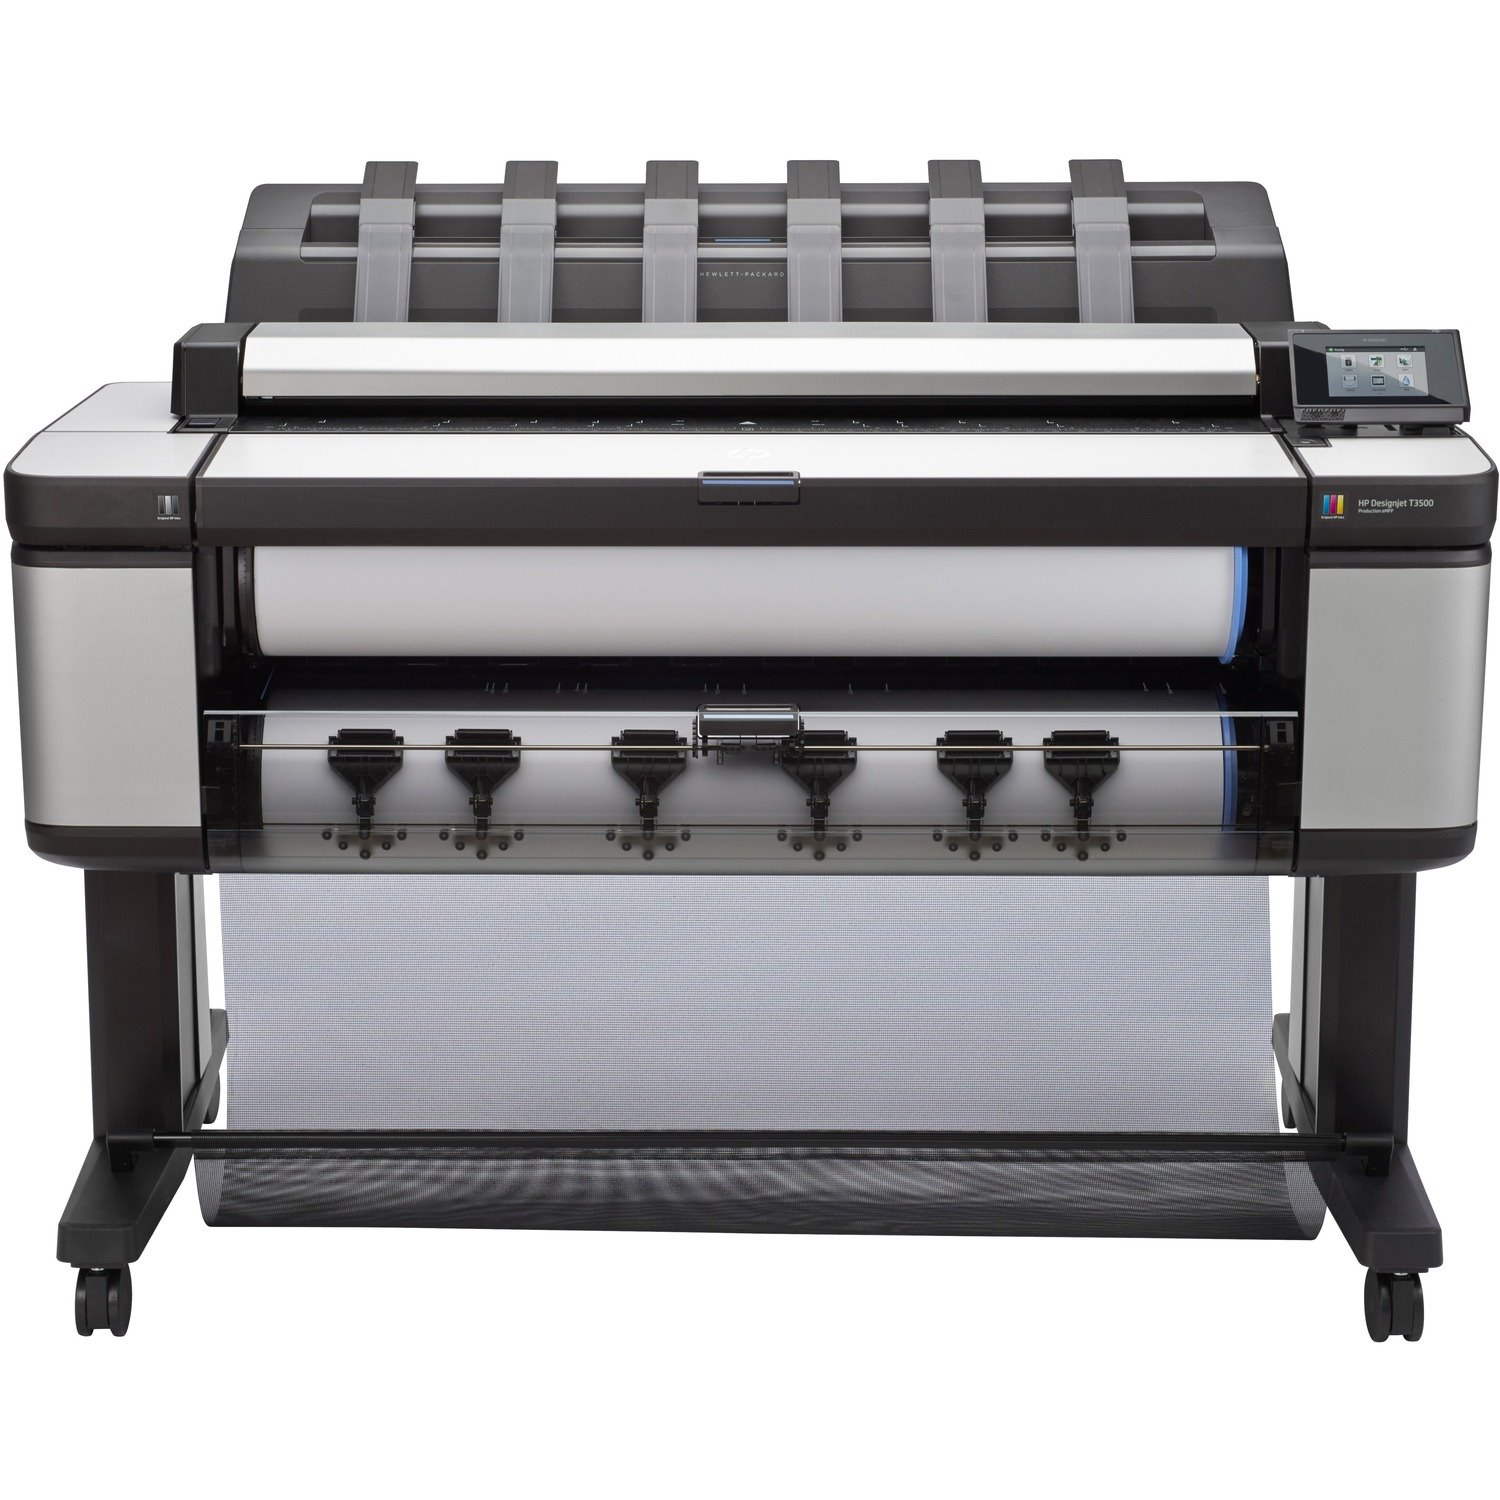 HP Designjet T3500 Inkjet Large Format Printer - Includes Copier, Printer, Scanner - 36" Print Width - Color